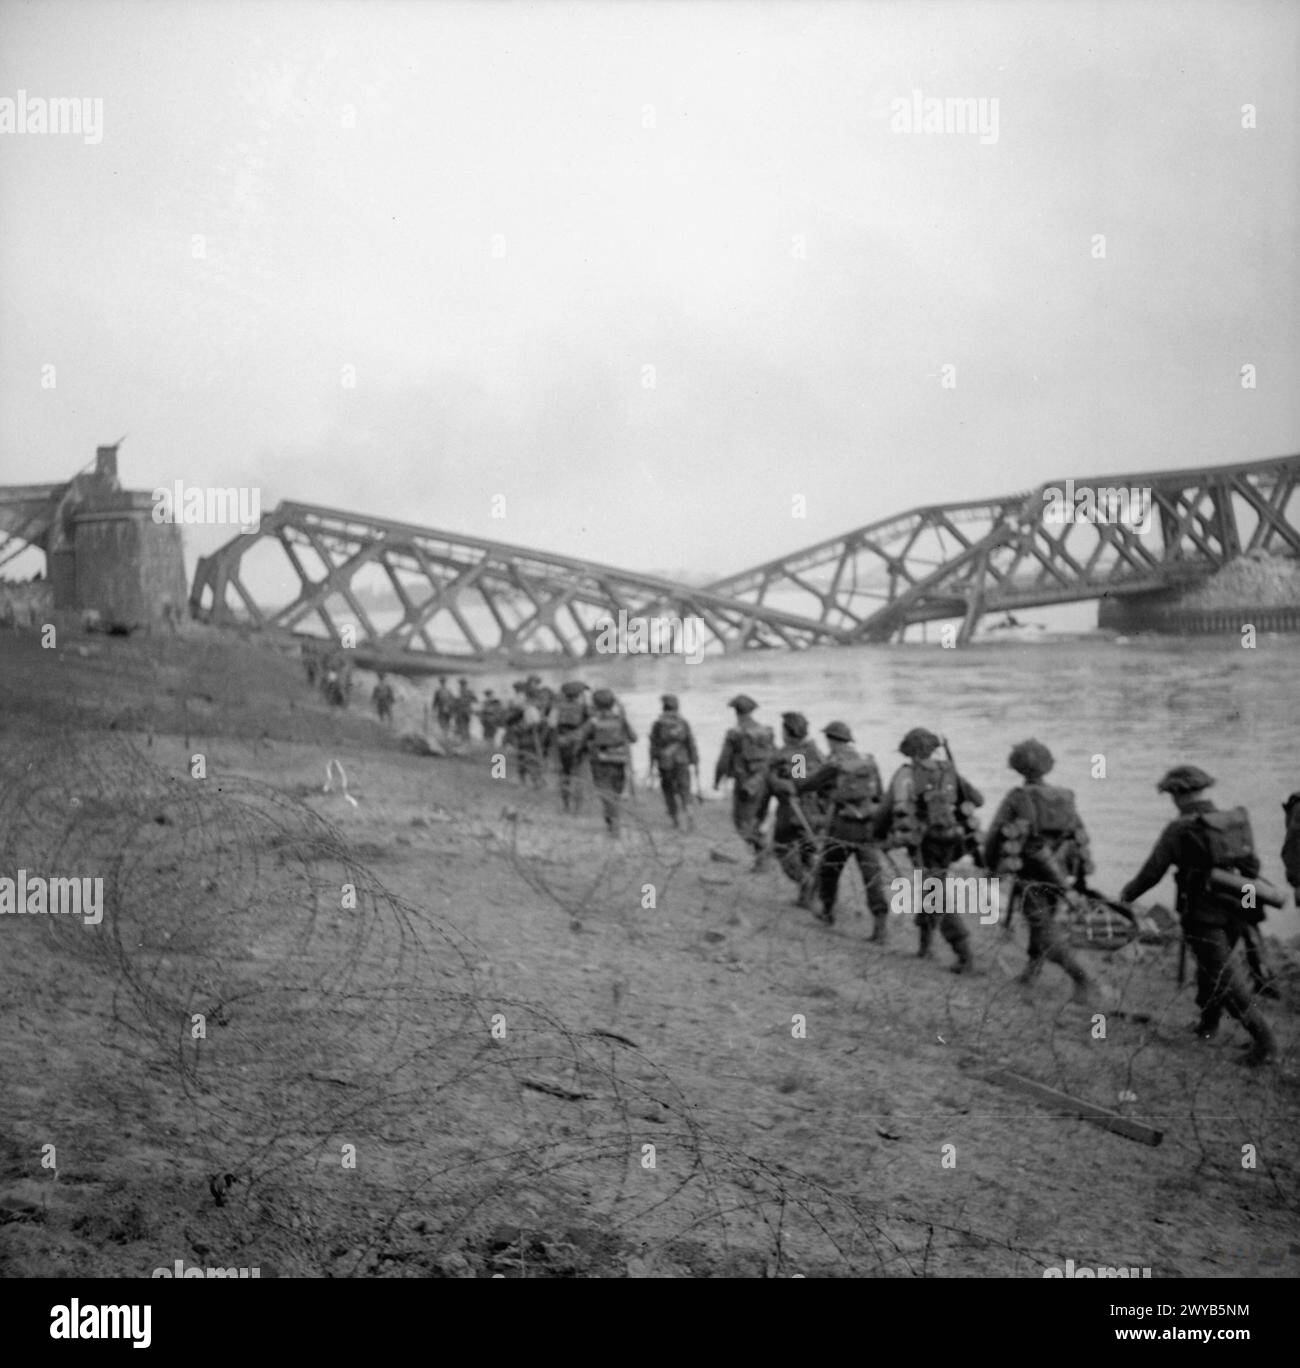 L'ARMÉE BRITANNIQUE EN EUROPE DU NORD-OUEST 1944-45: ASSAUT SUR LE RHIN ET CAPTURE DE WESEL - ceci est l'une d'une collection d'images qui montrent le débarquement des buffles du 1er Bataillon Cheshire Regiment, qui a débarqué dans l'après-midi du 24 mars 1945, en soutien à la Brigade Commando No.1 S.S à Wesel. Le pont vu en arrière-plan est le pont de chemin de fer brisé à Wesel. , Armée britannique, régiment de Cheshire, 1er bataillon Banque D'Images